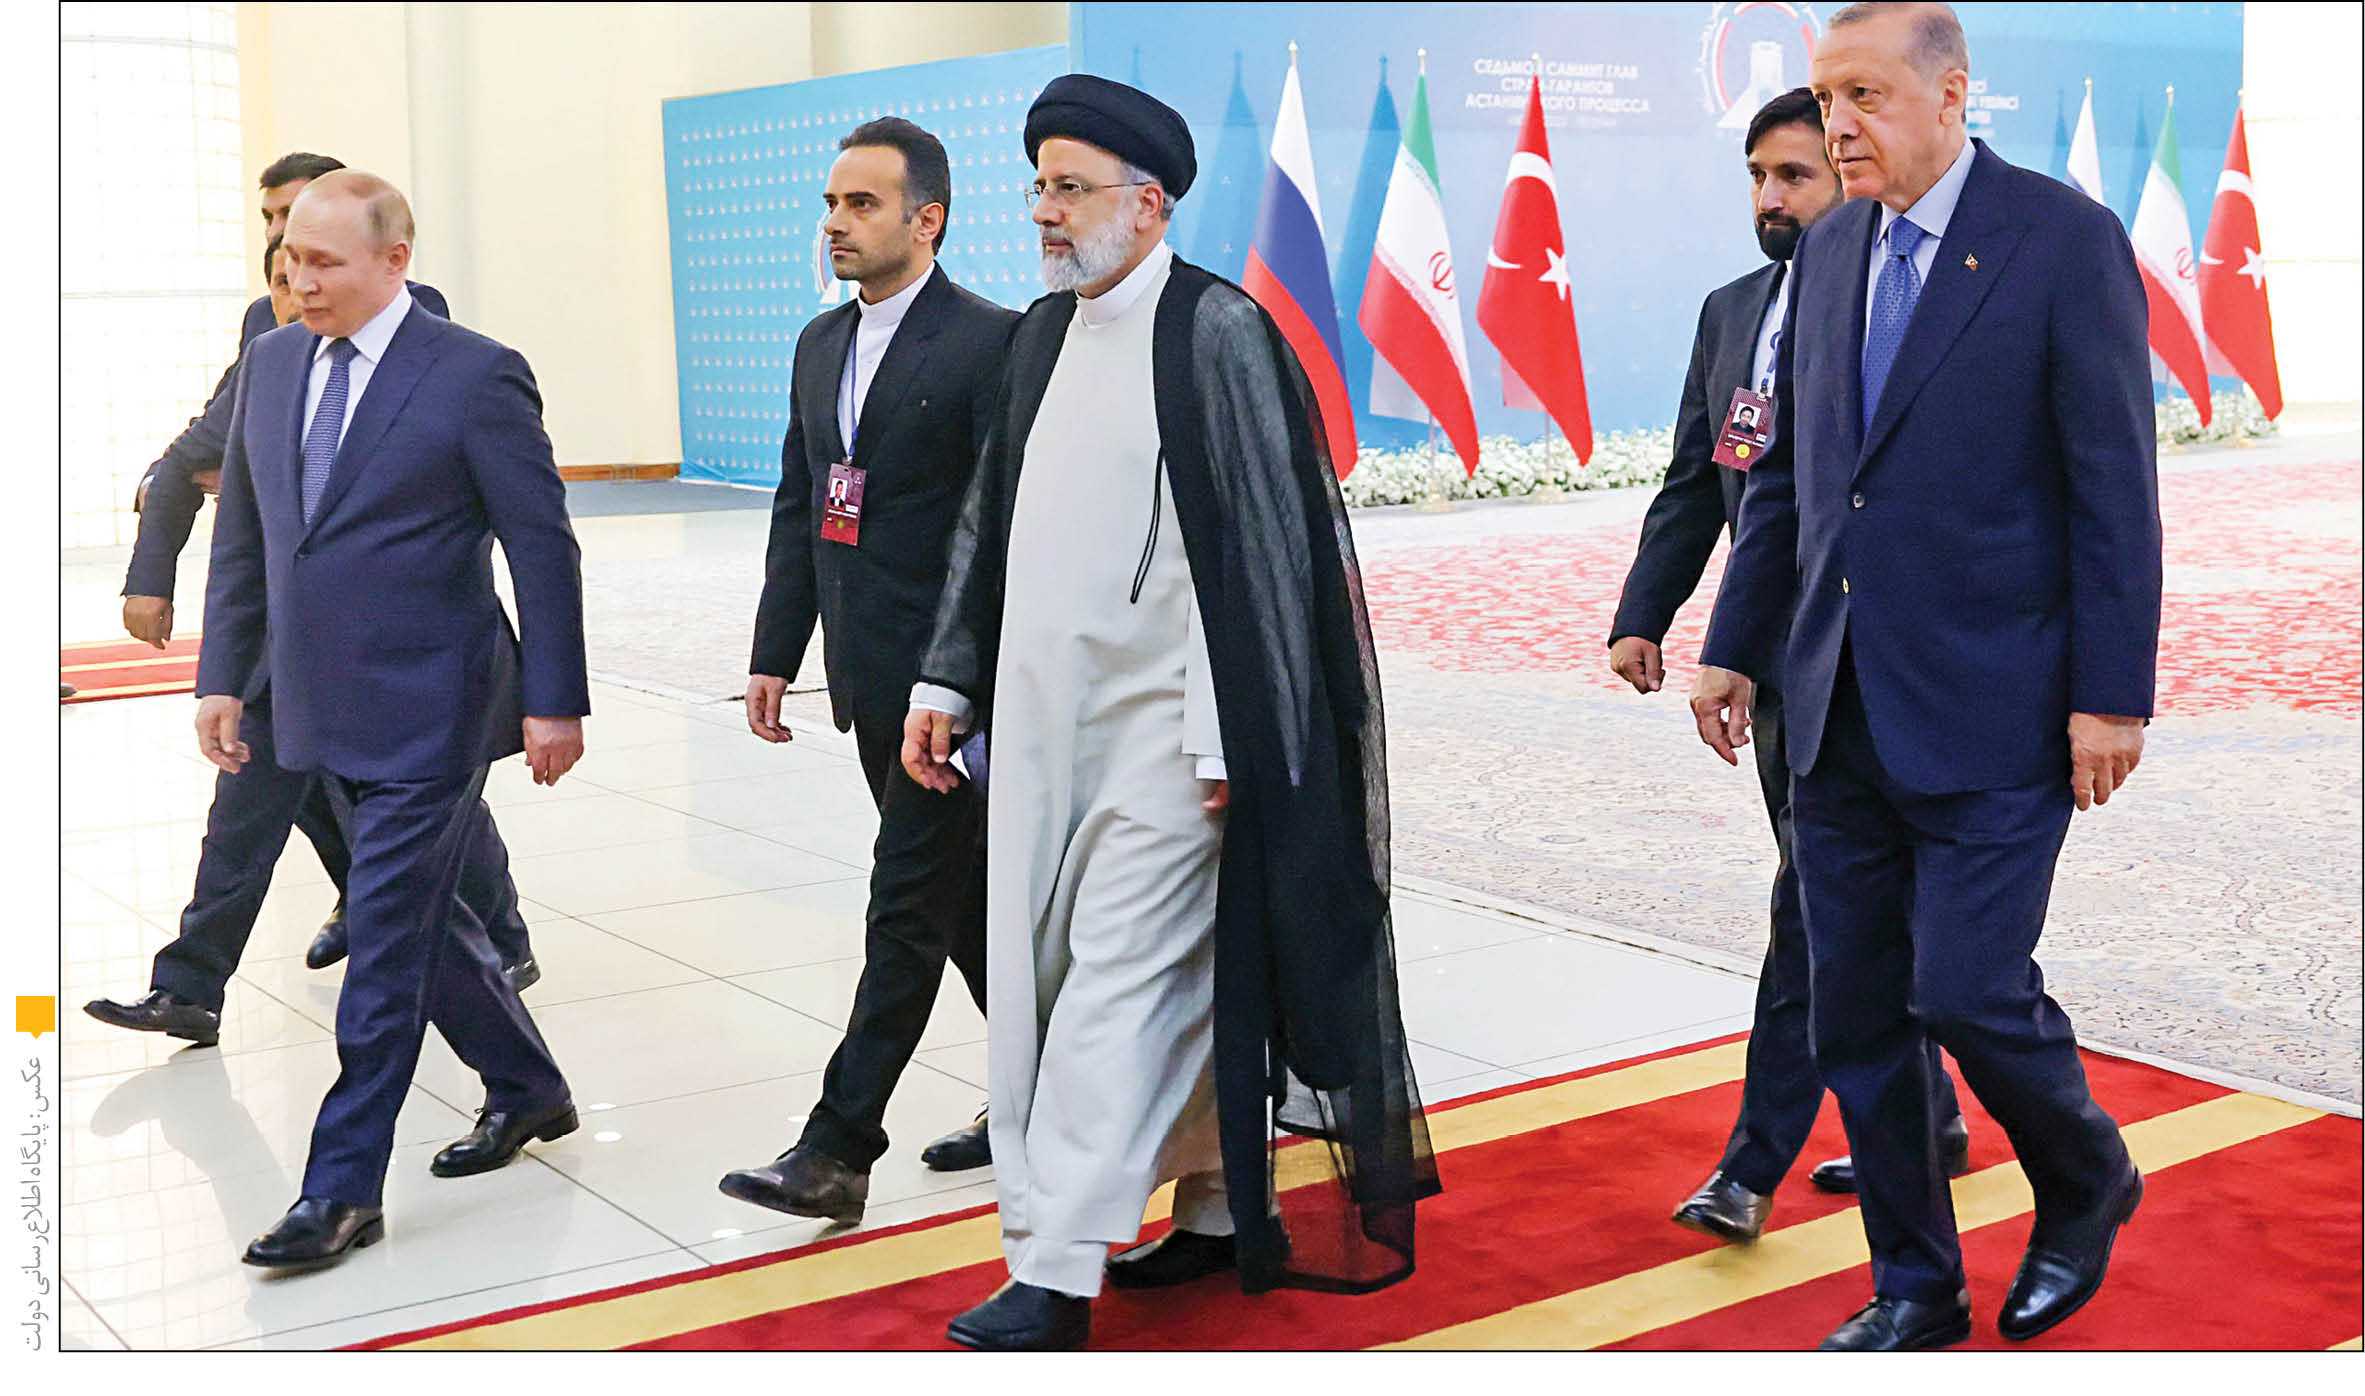 دیپلماسی همگرایی ایران باید «استمرار» داشته باشد